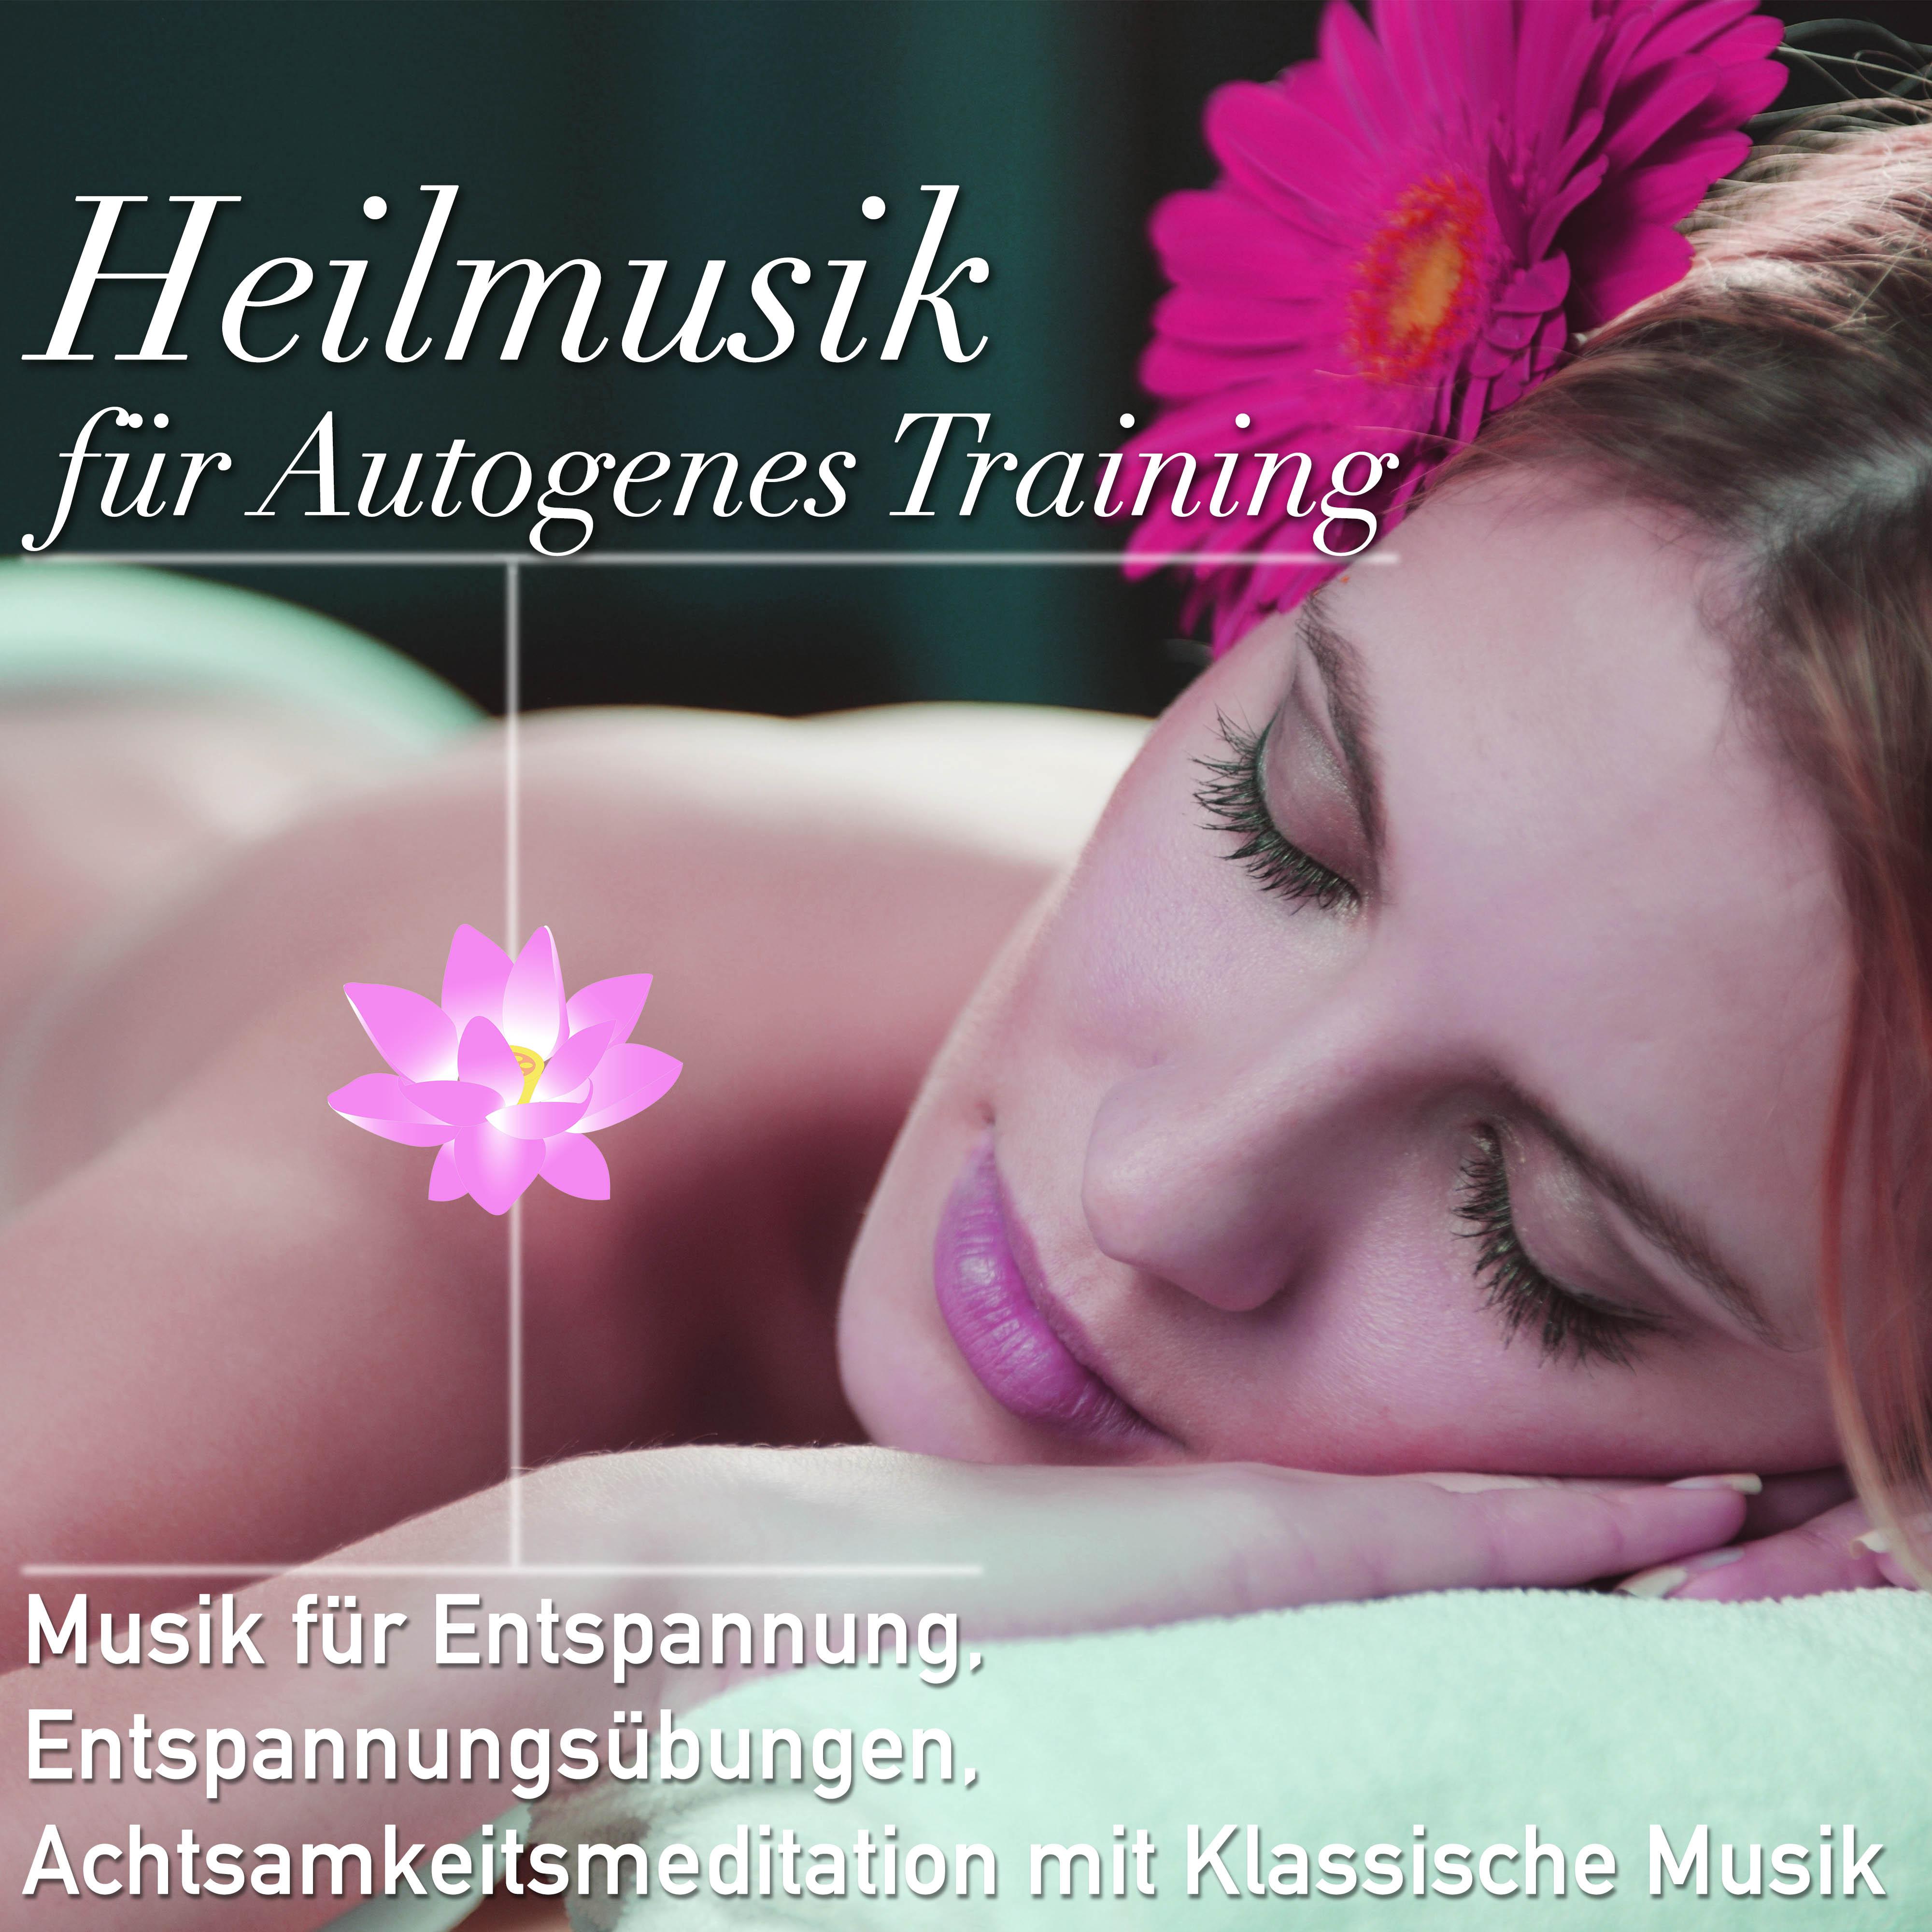 Heilmusik für Autogenes Training: Musik für Entspannung, Entspannungsübungen, Achtsamkeitsmeditation mit Klassische Musik